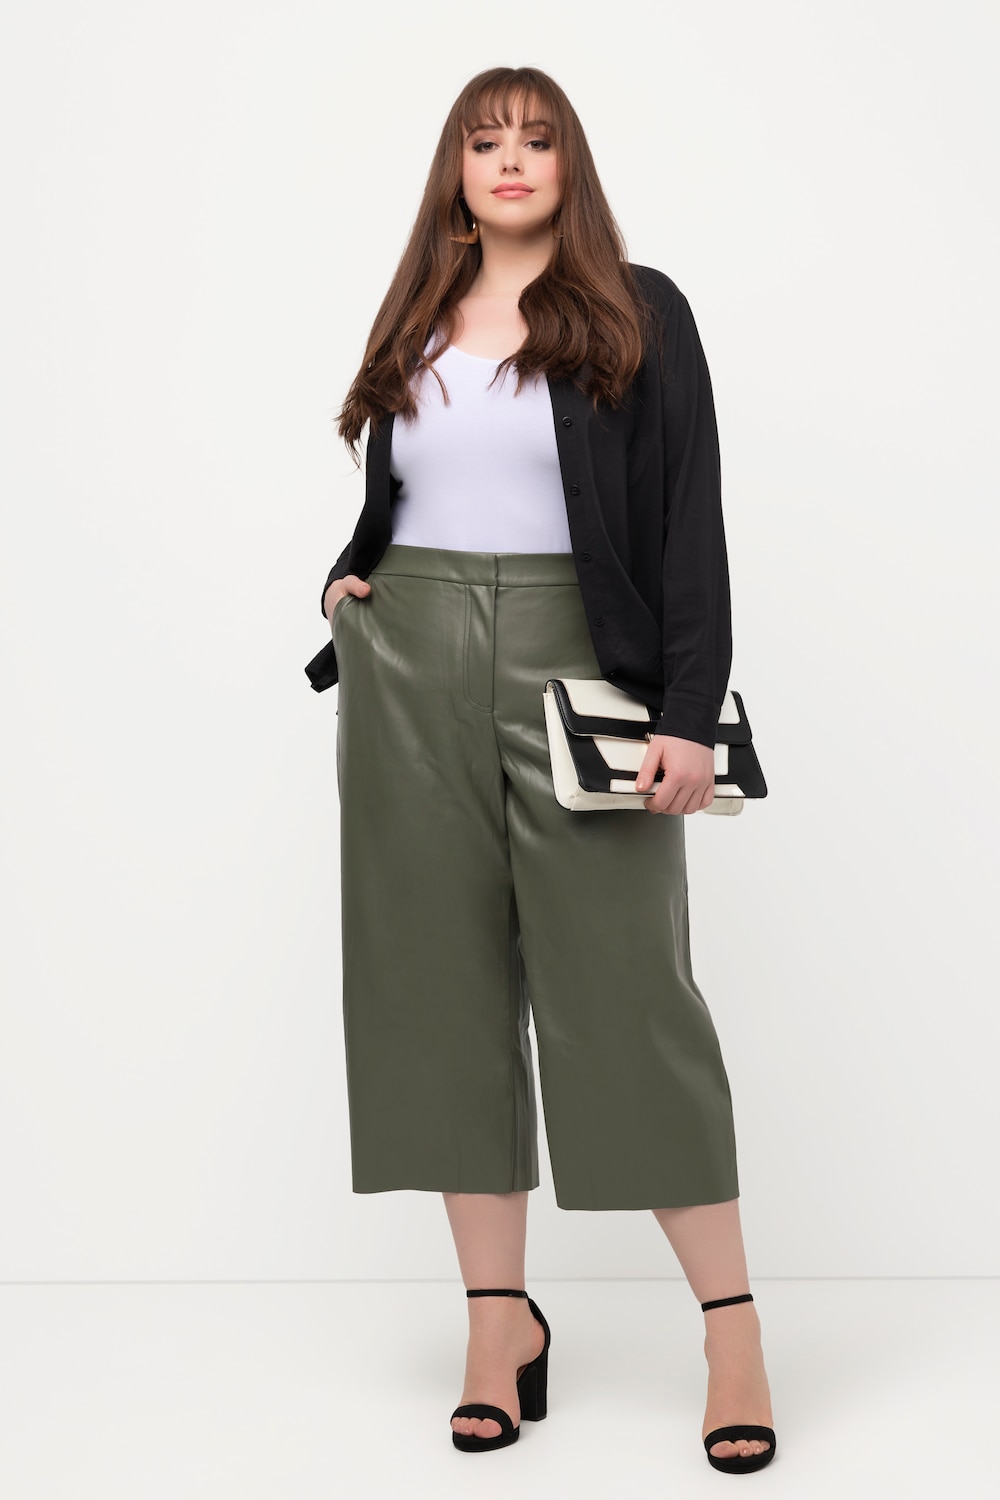 Plus Size Leather Look Wide Leg Culotte Pants, Woman, brown, size: 20/22, synthetic fibers, Ulla Popken